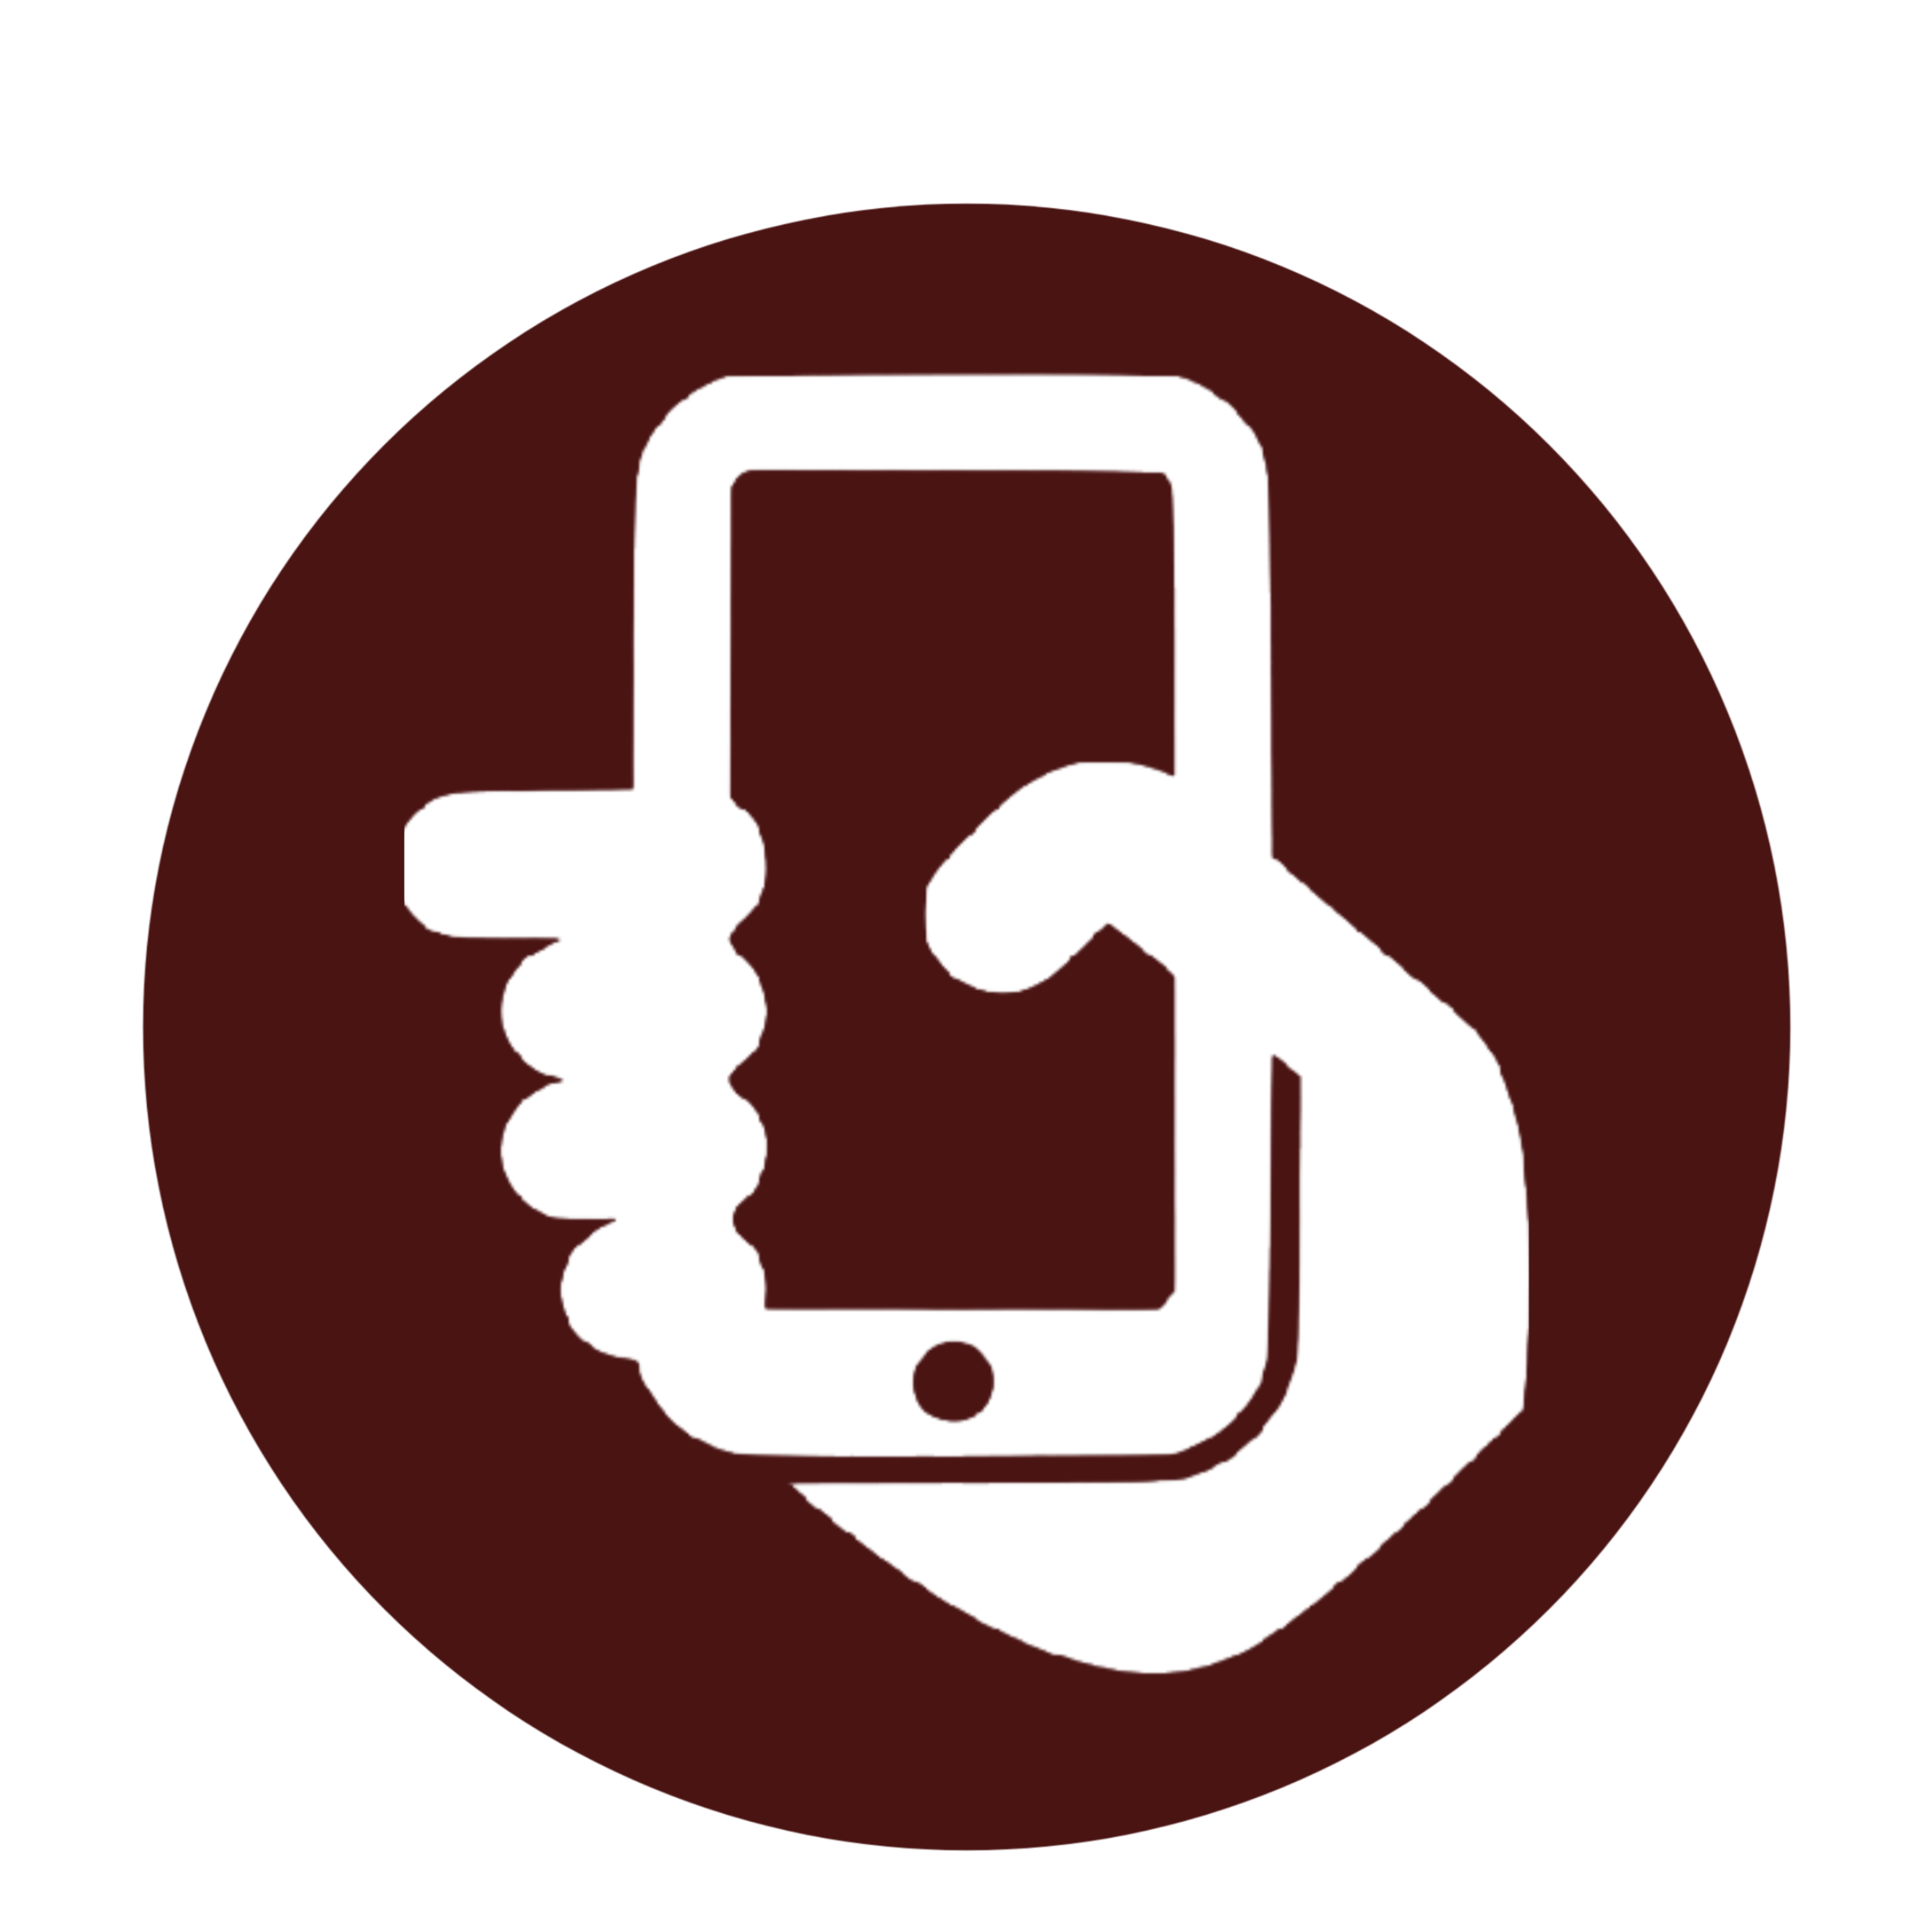 TELYRICS.COM